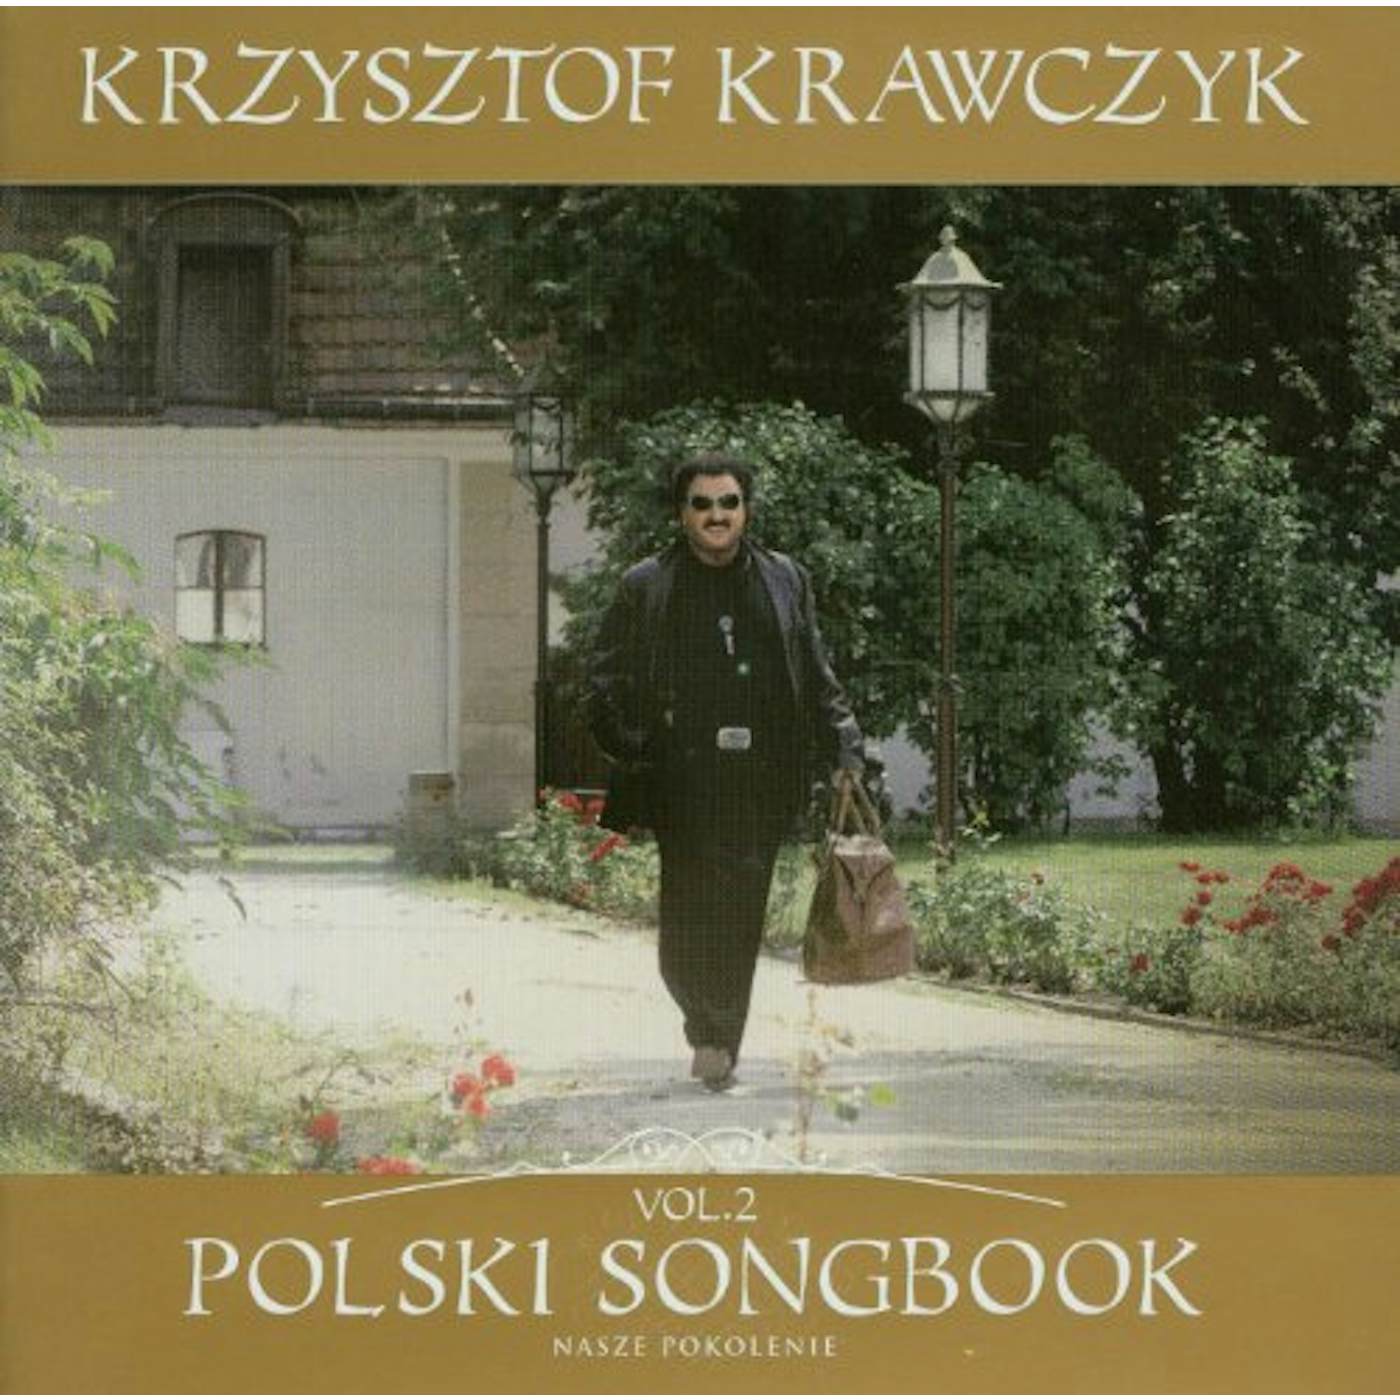 Krzysztof Krawczyk POLSKI SONGBOOK 2 CD